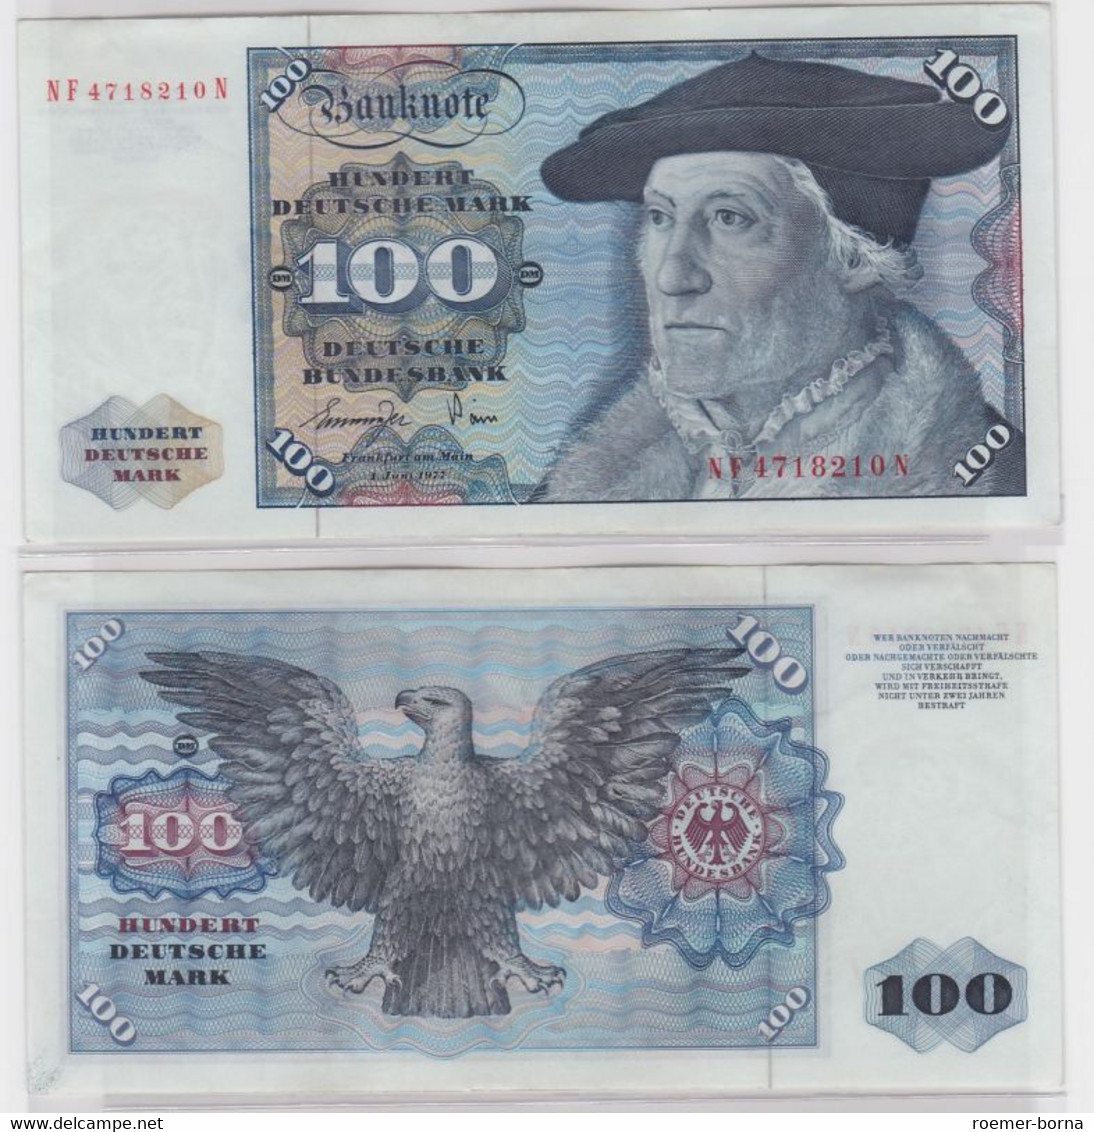 T146067 Banknote 100 DM Deutsche Mark Ro 278a Schein 1.Juni 1977 KN NF 4718210 N - 100 DM